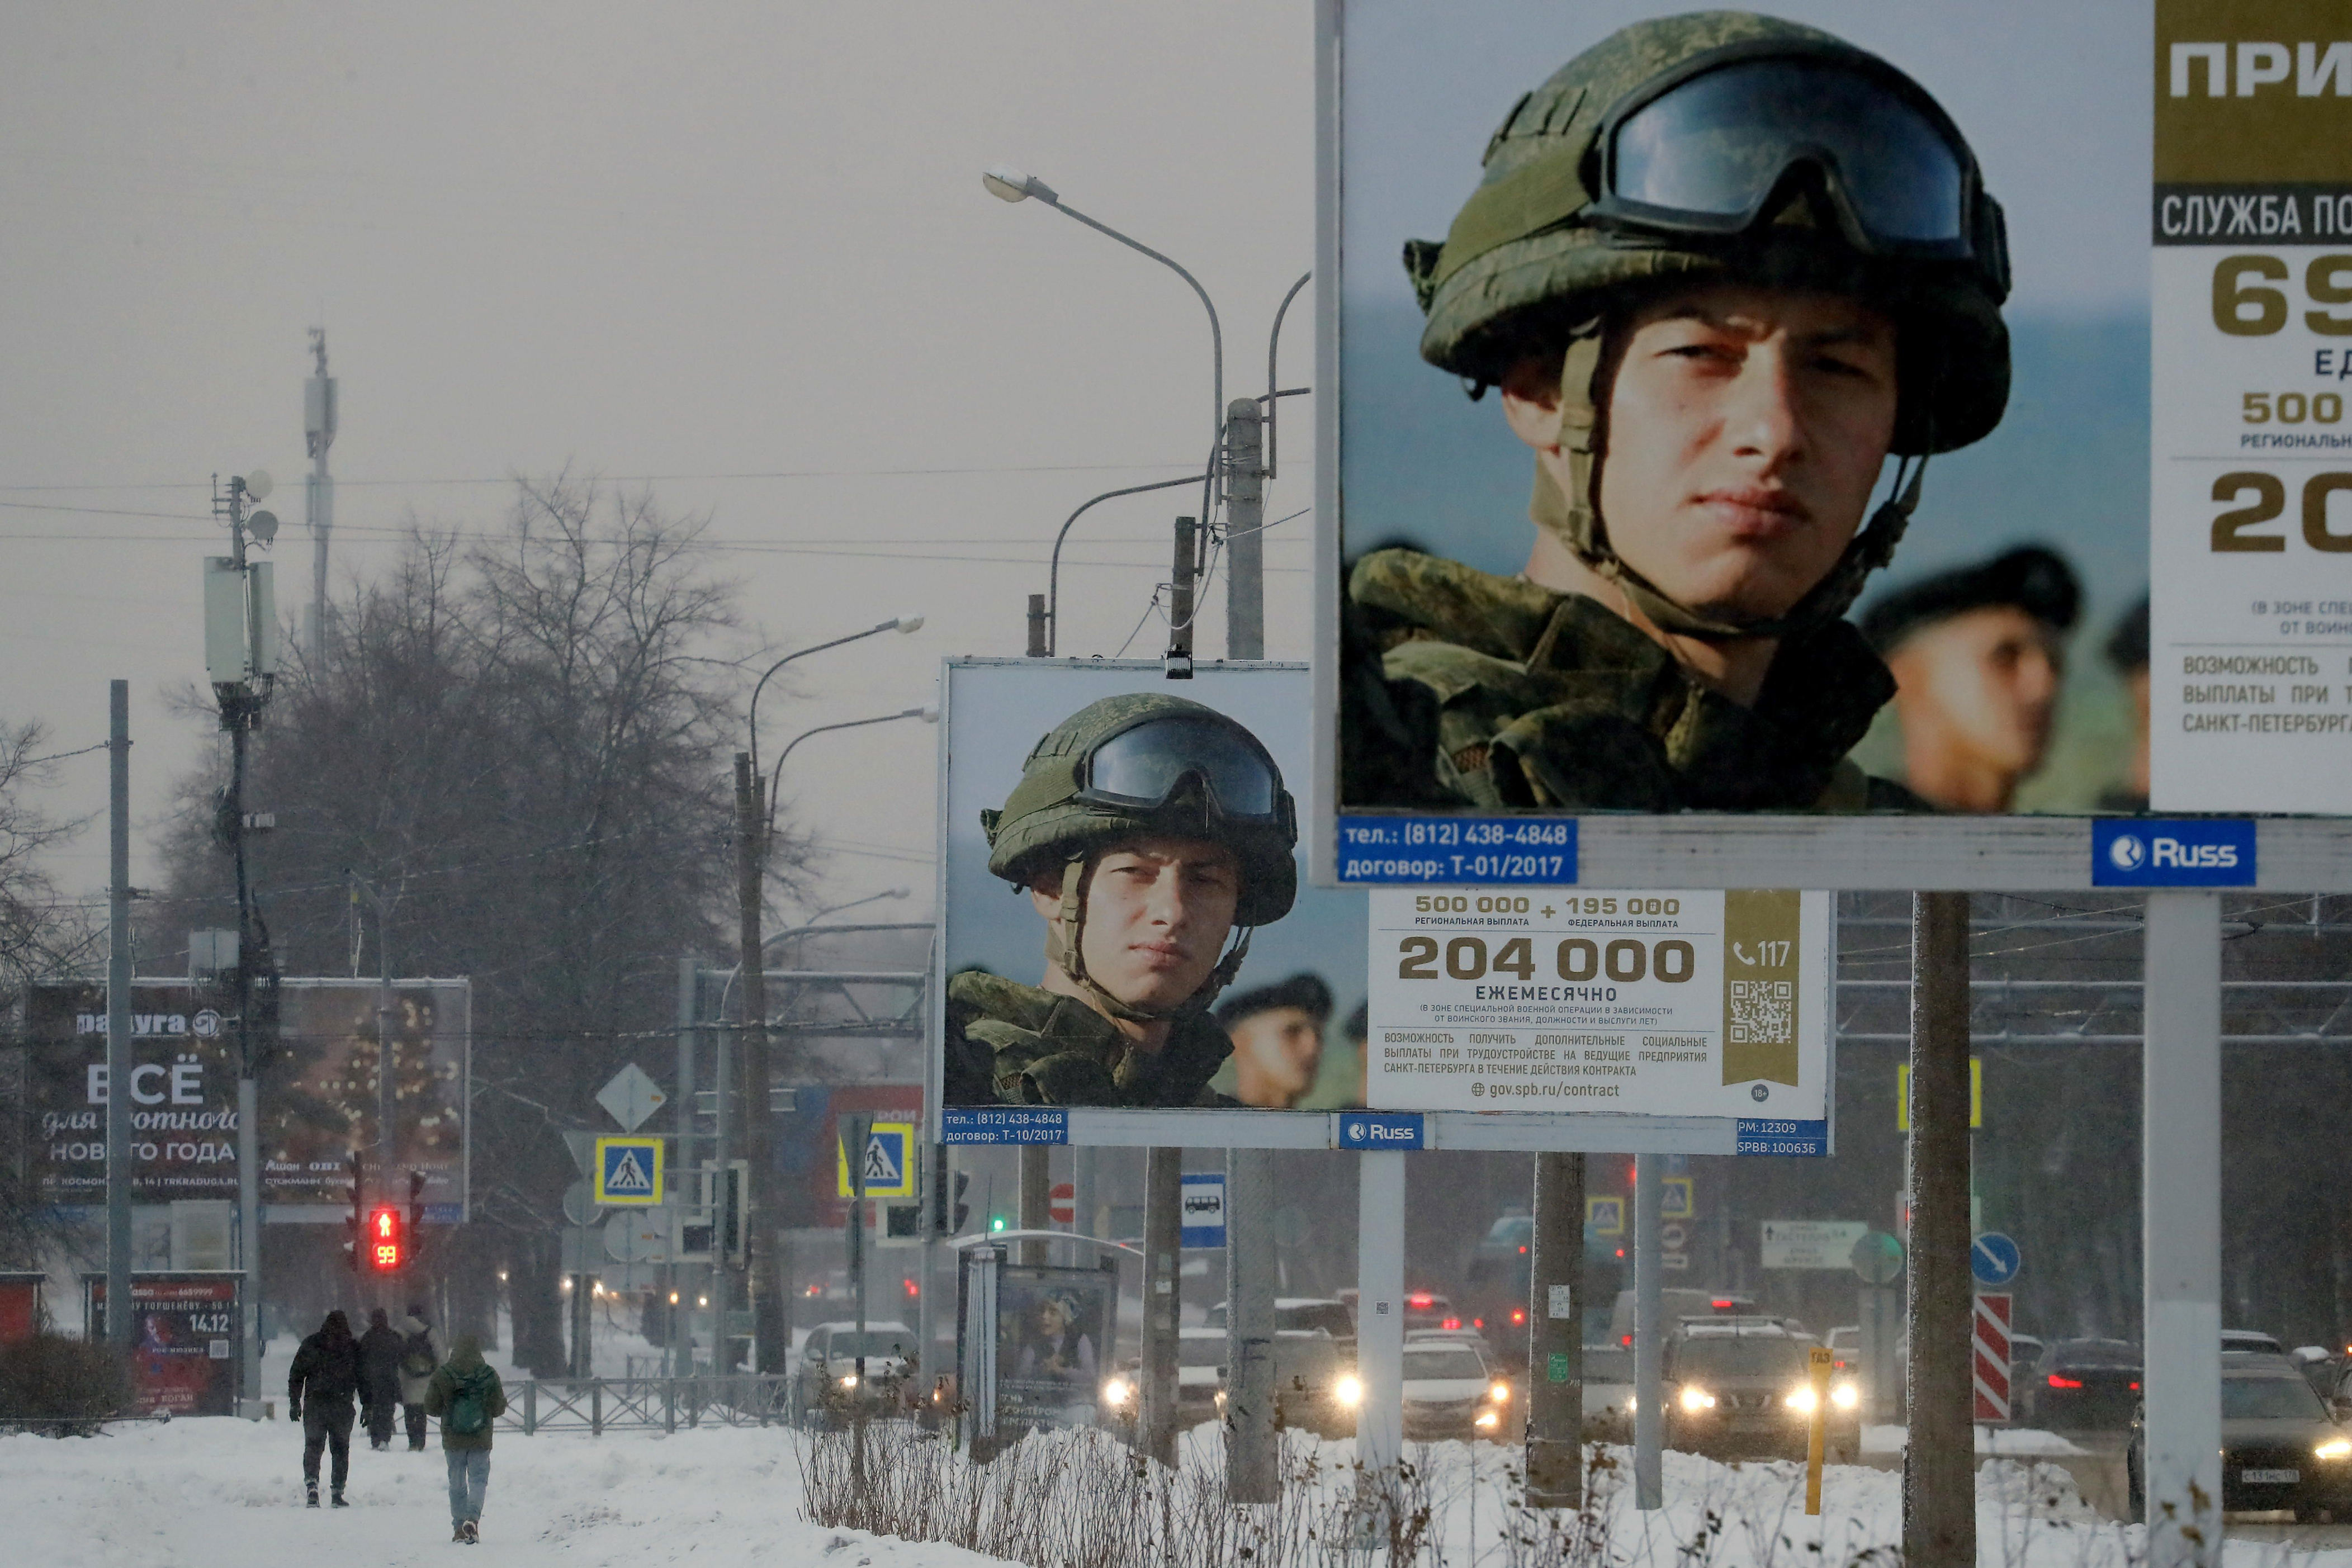 la otan calcula que rusia ha perdido a 300.000 soldados en ucrania